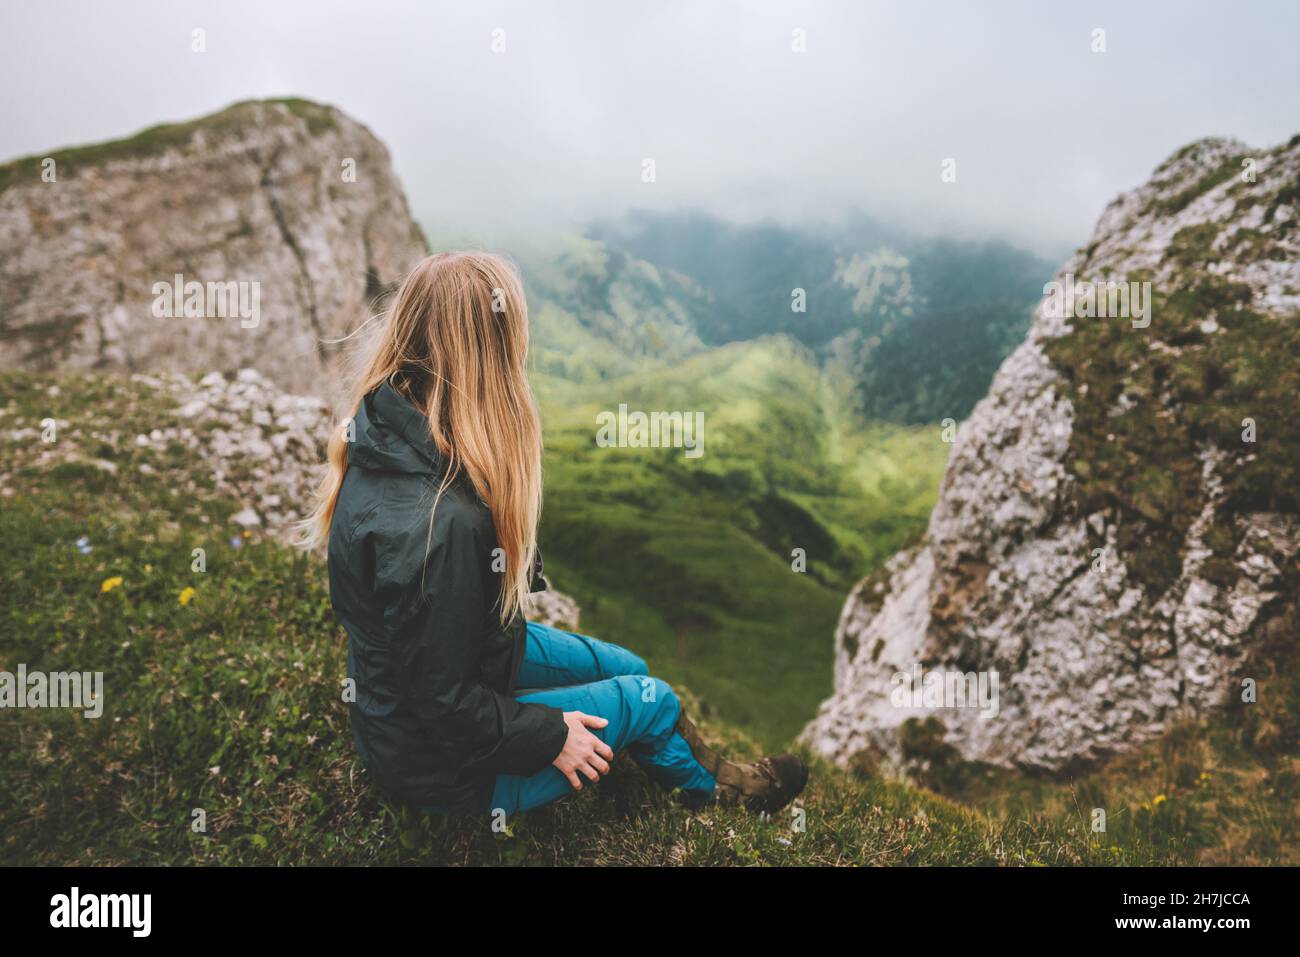 Frau, die alleine auf einer Klippe sitzt und die neblige Aussicht genießt, in den Bergen wandern, Abenteuer im Freien, Urlaub mit gesunder Lebensweise Stockfoto